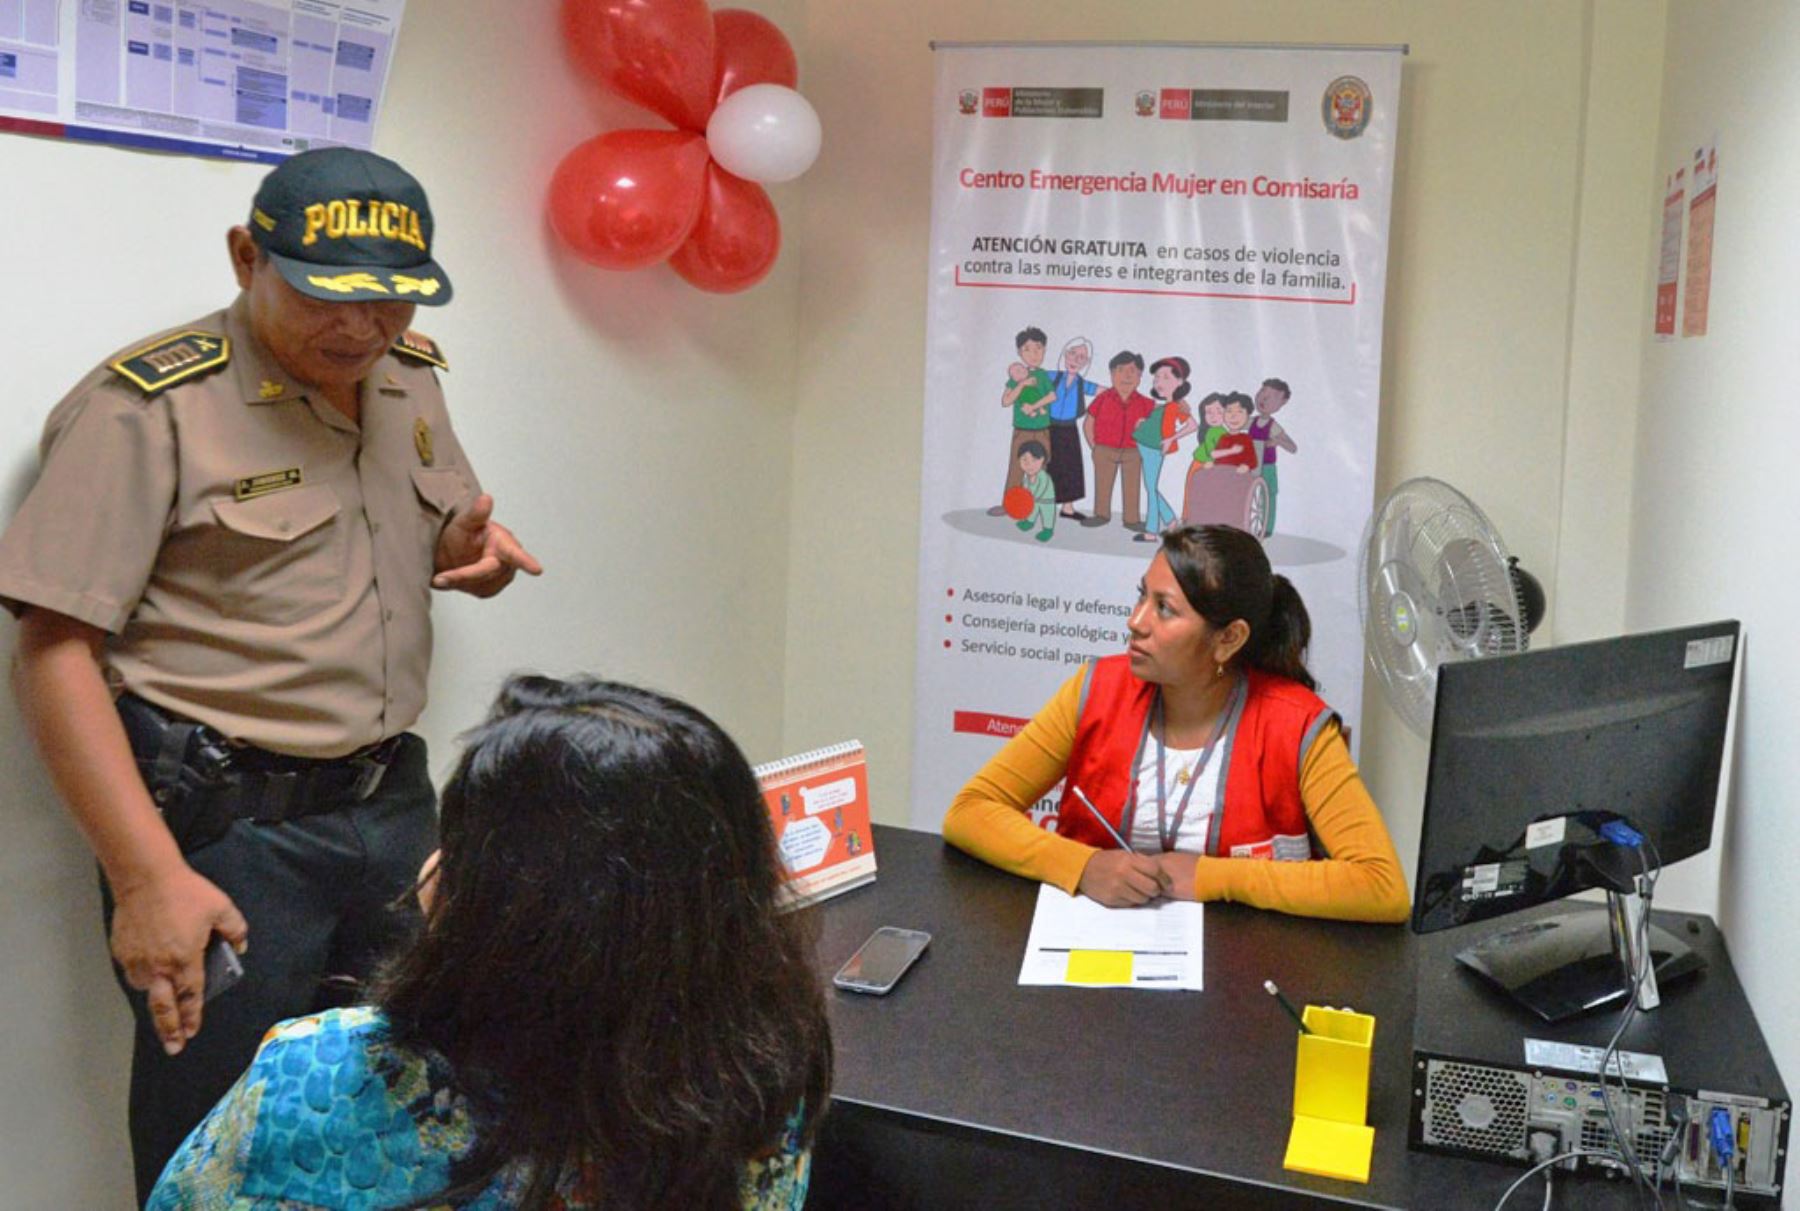 Se fortalecerán los 182 centros de emergencia mujer que funcionan en las comisarías del país. Foto: ANDINA/difusión.